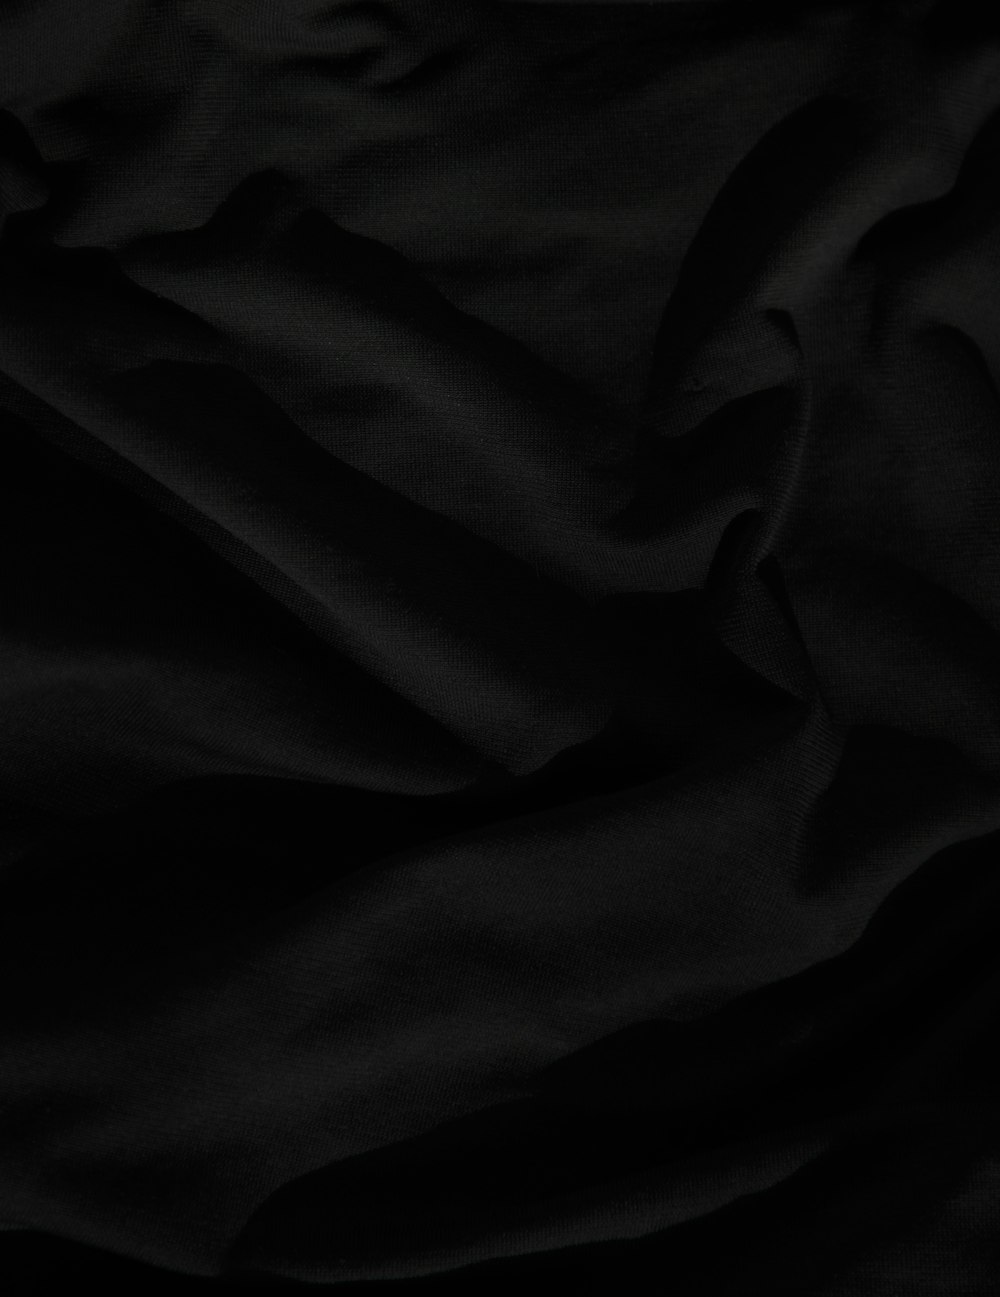 textil negro sobre textil blanco